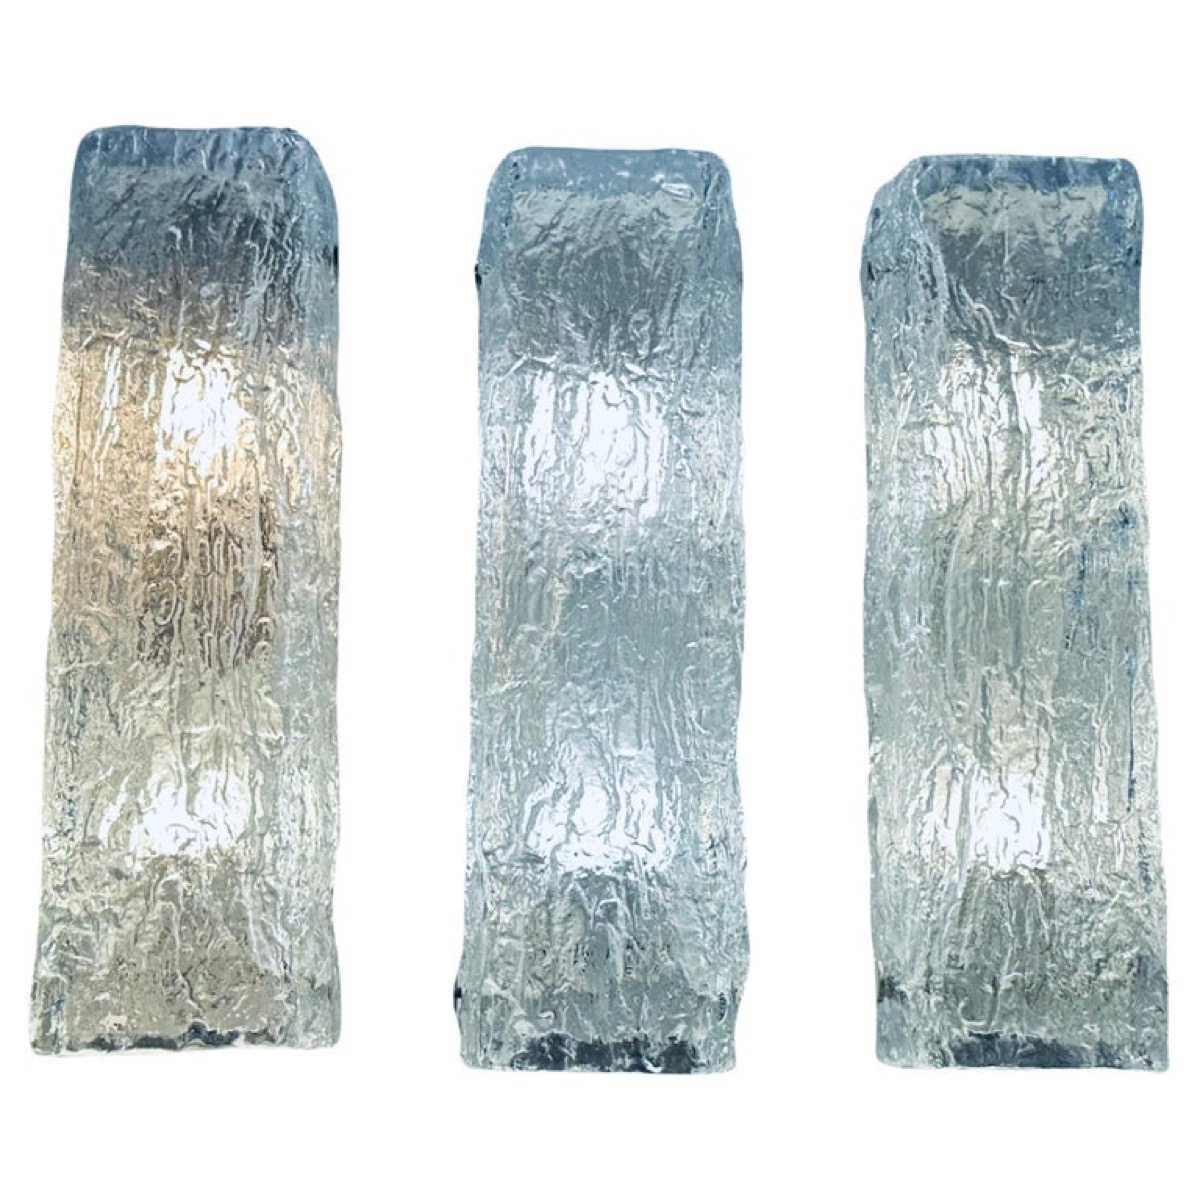 1970s German Kaiser Leuchten Iced Textured Glass Wall Lights.  3 Available.